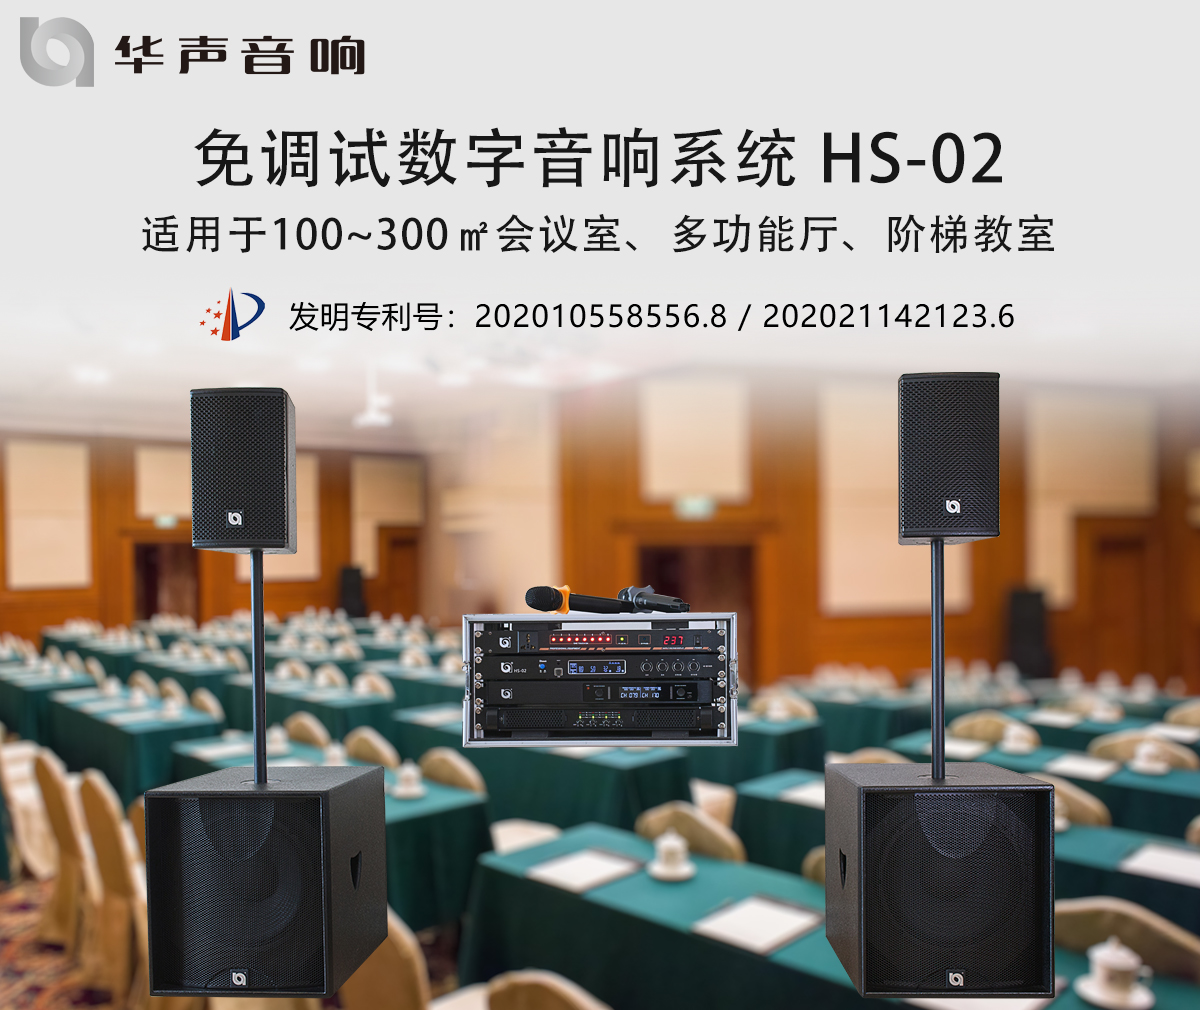 100-300㎡多功能厅 数字音频扩声系统 HS-02(图3)